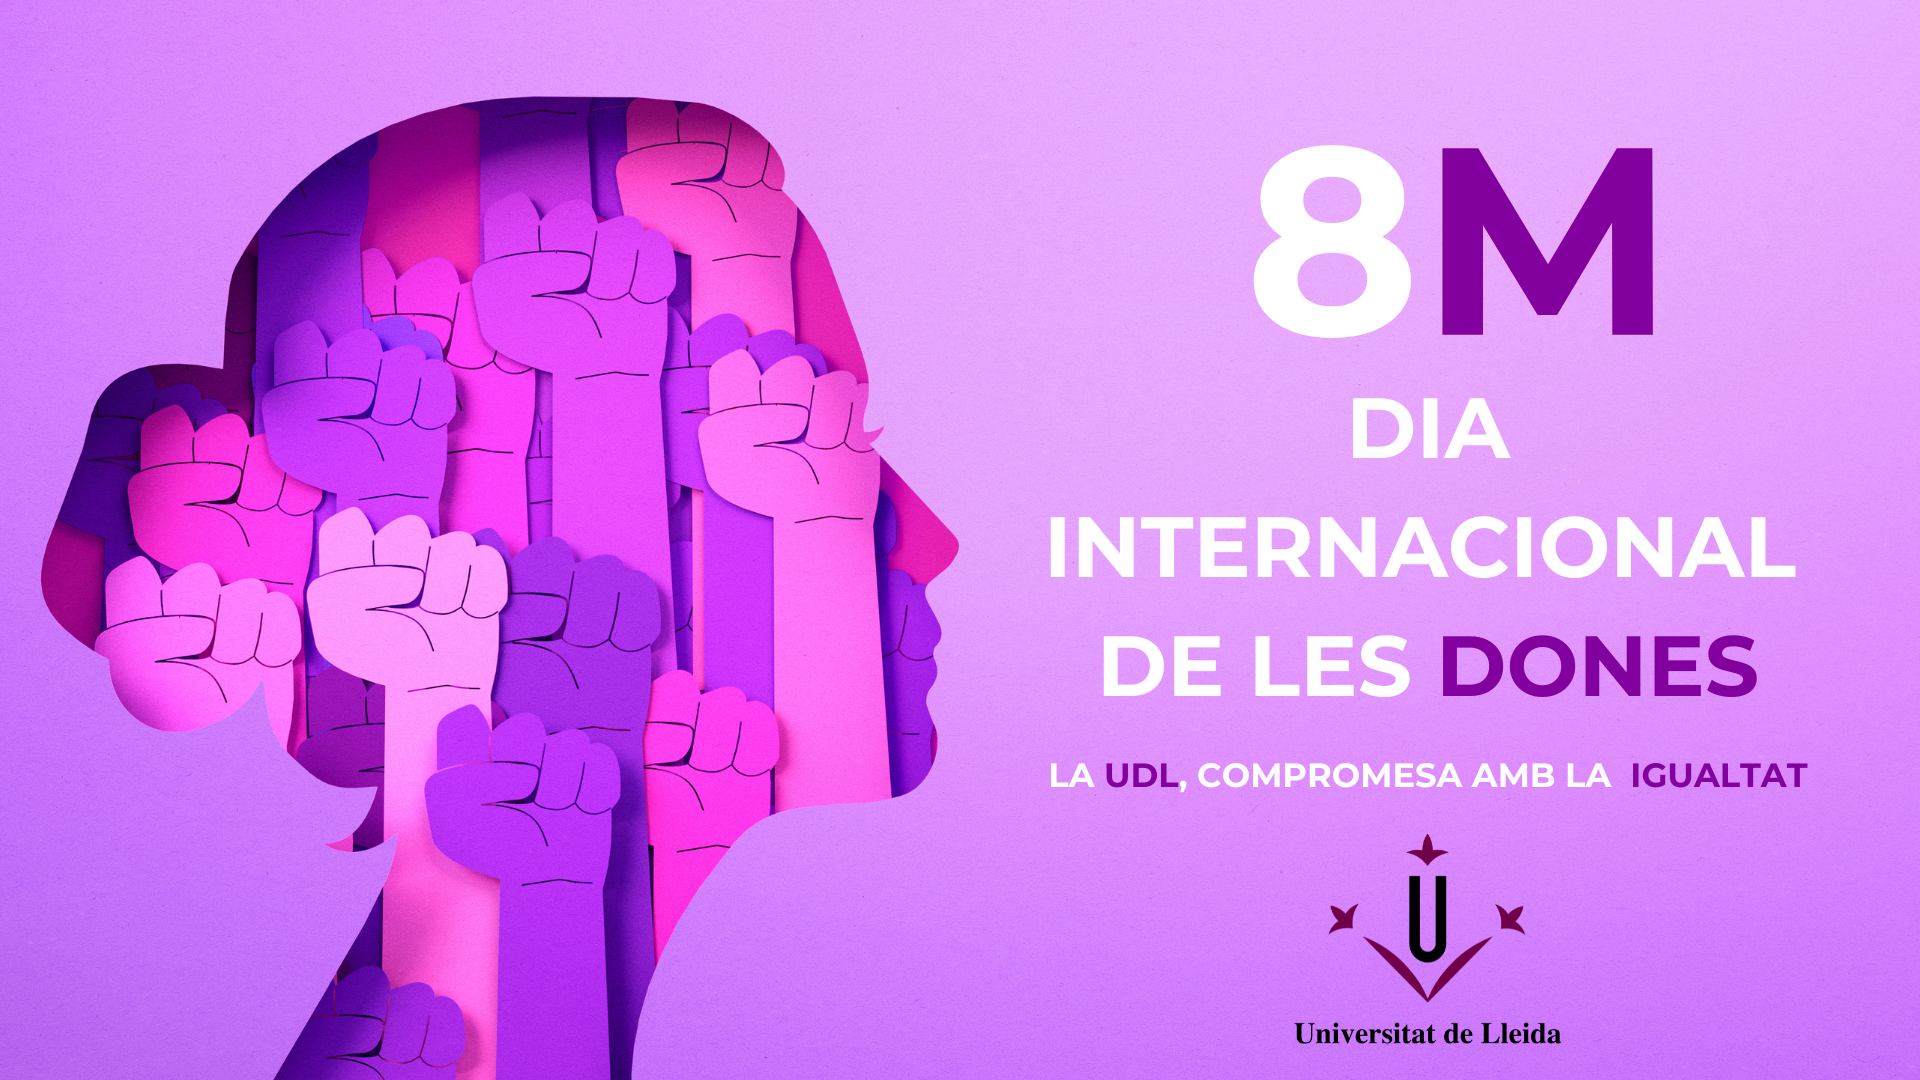 Commemoració del Dia Internacional de les Dones 8M a la UdL